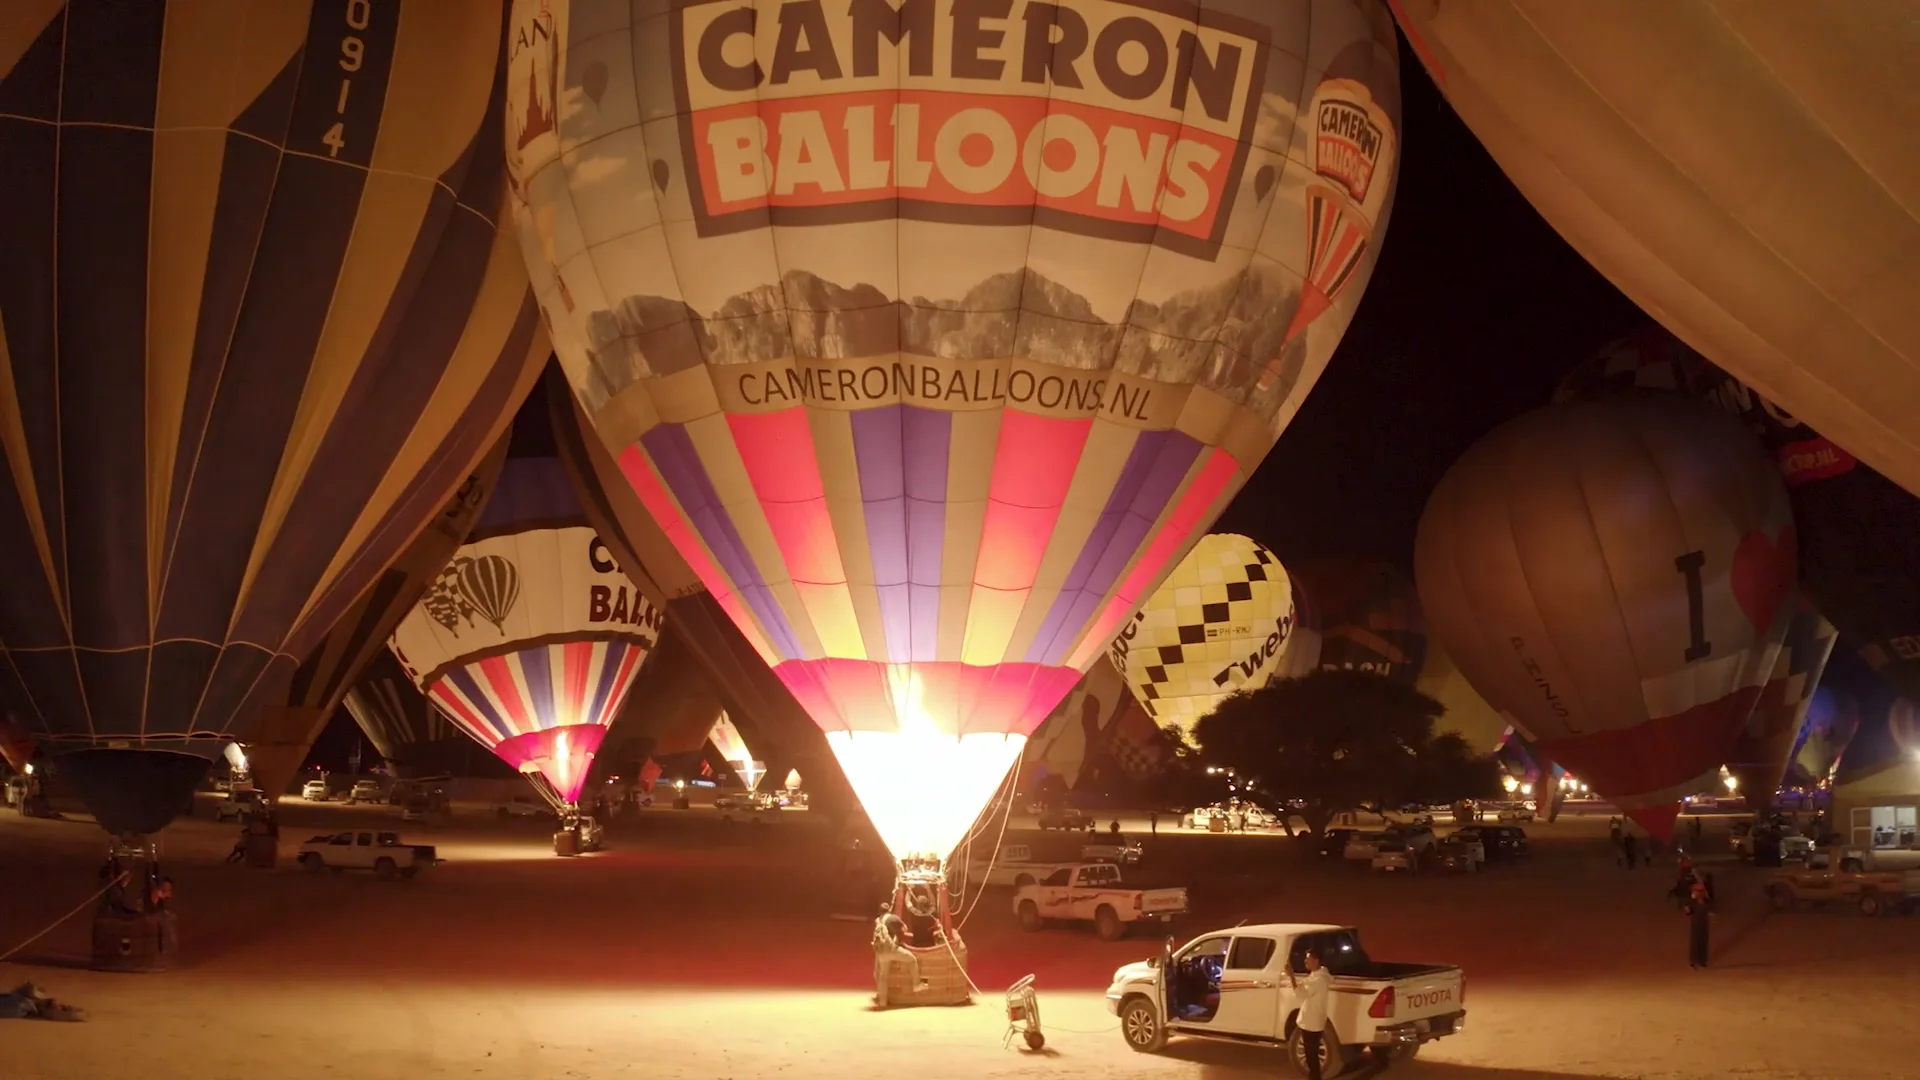 Chimney Balloon on Vimeo